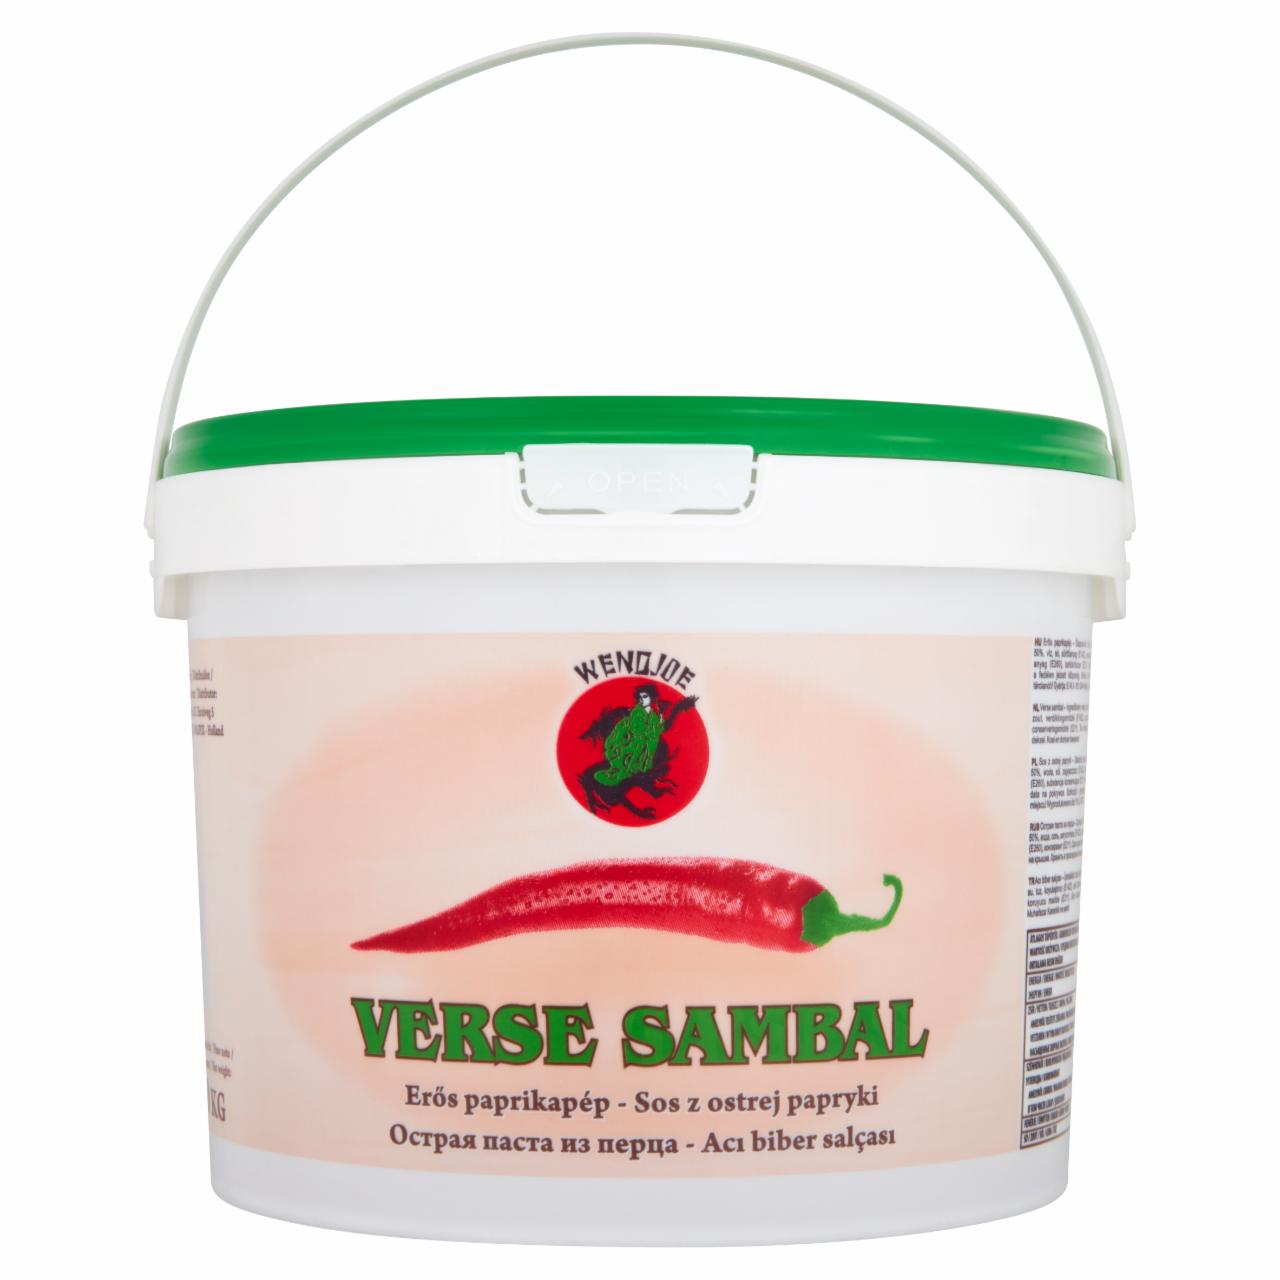 Zdjęcia - Verse Sambal Sos z ostrej papryki zielony 10 kg